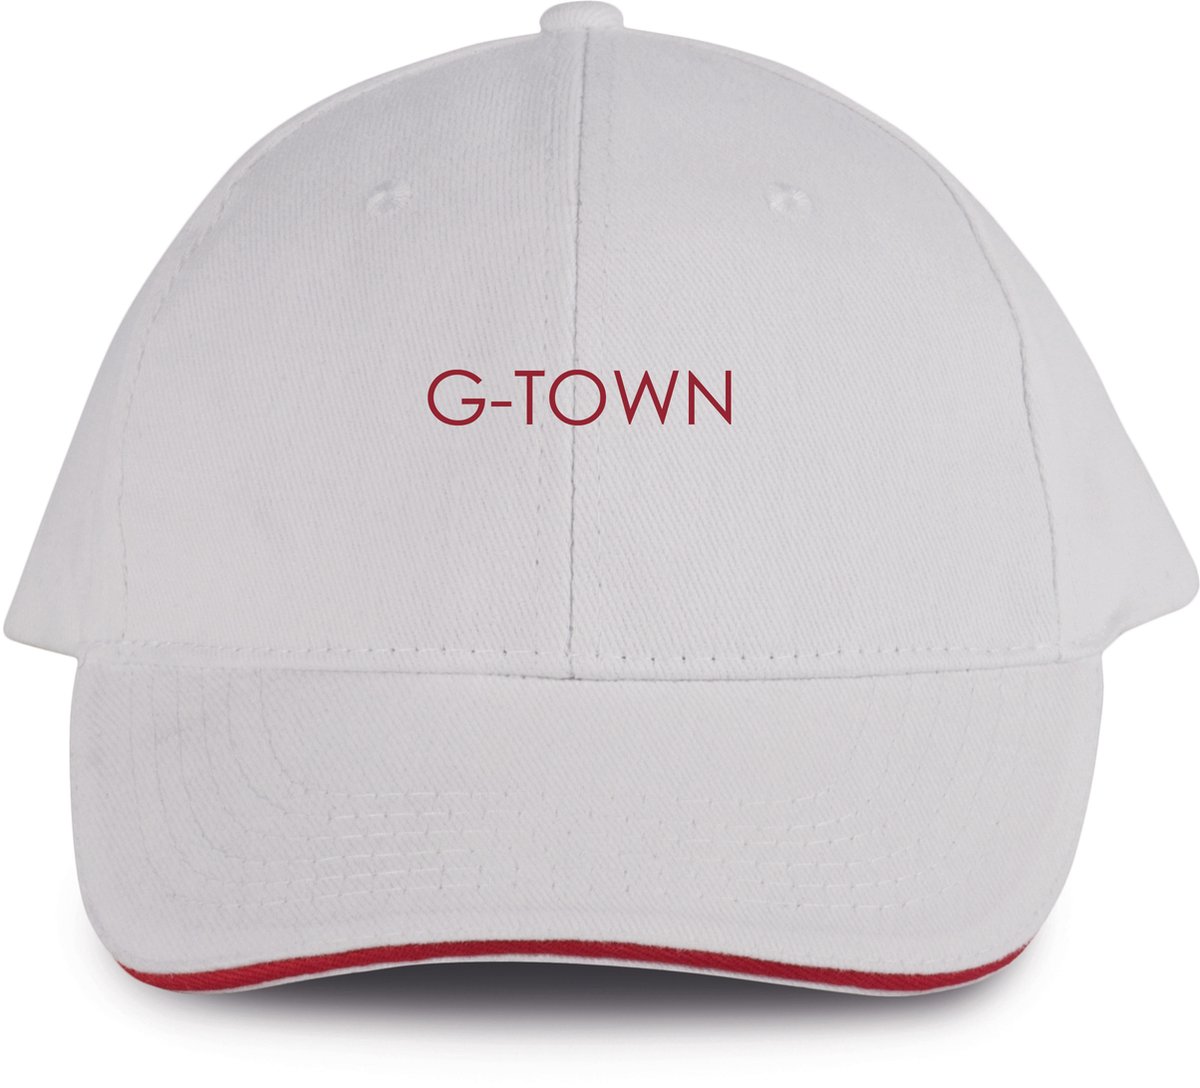 G-TOWN Baseball Cap White Red